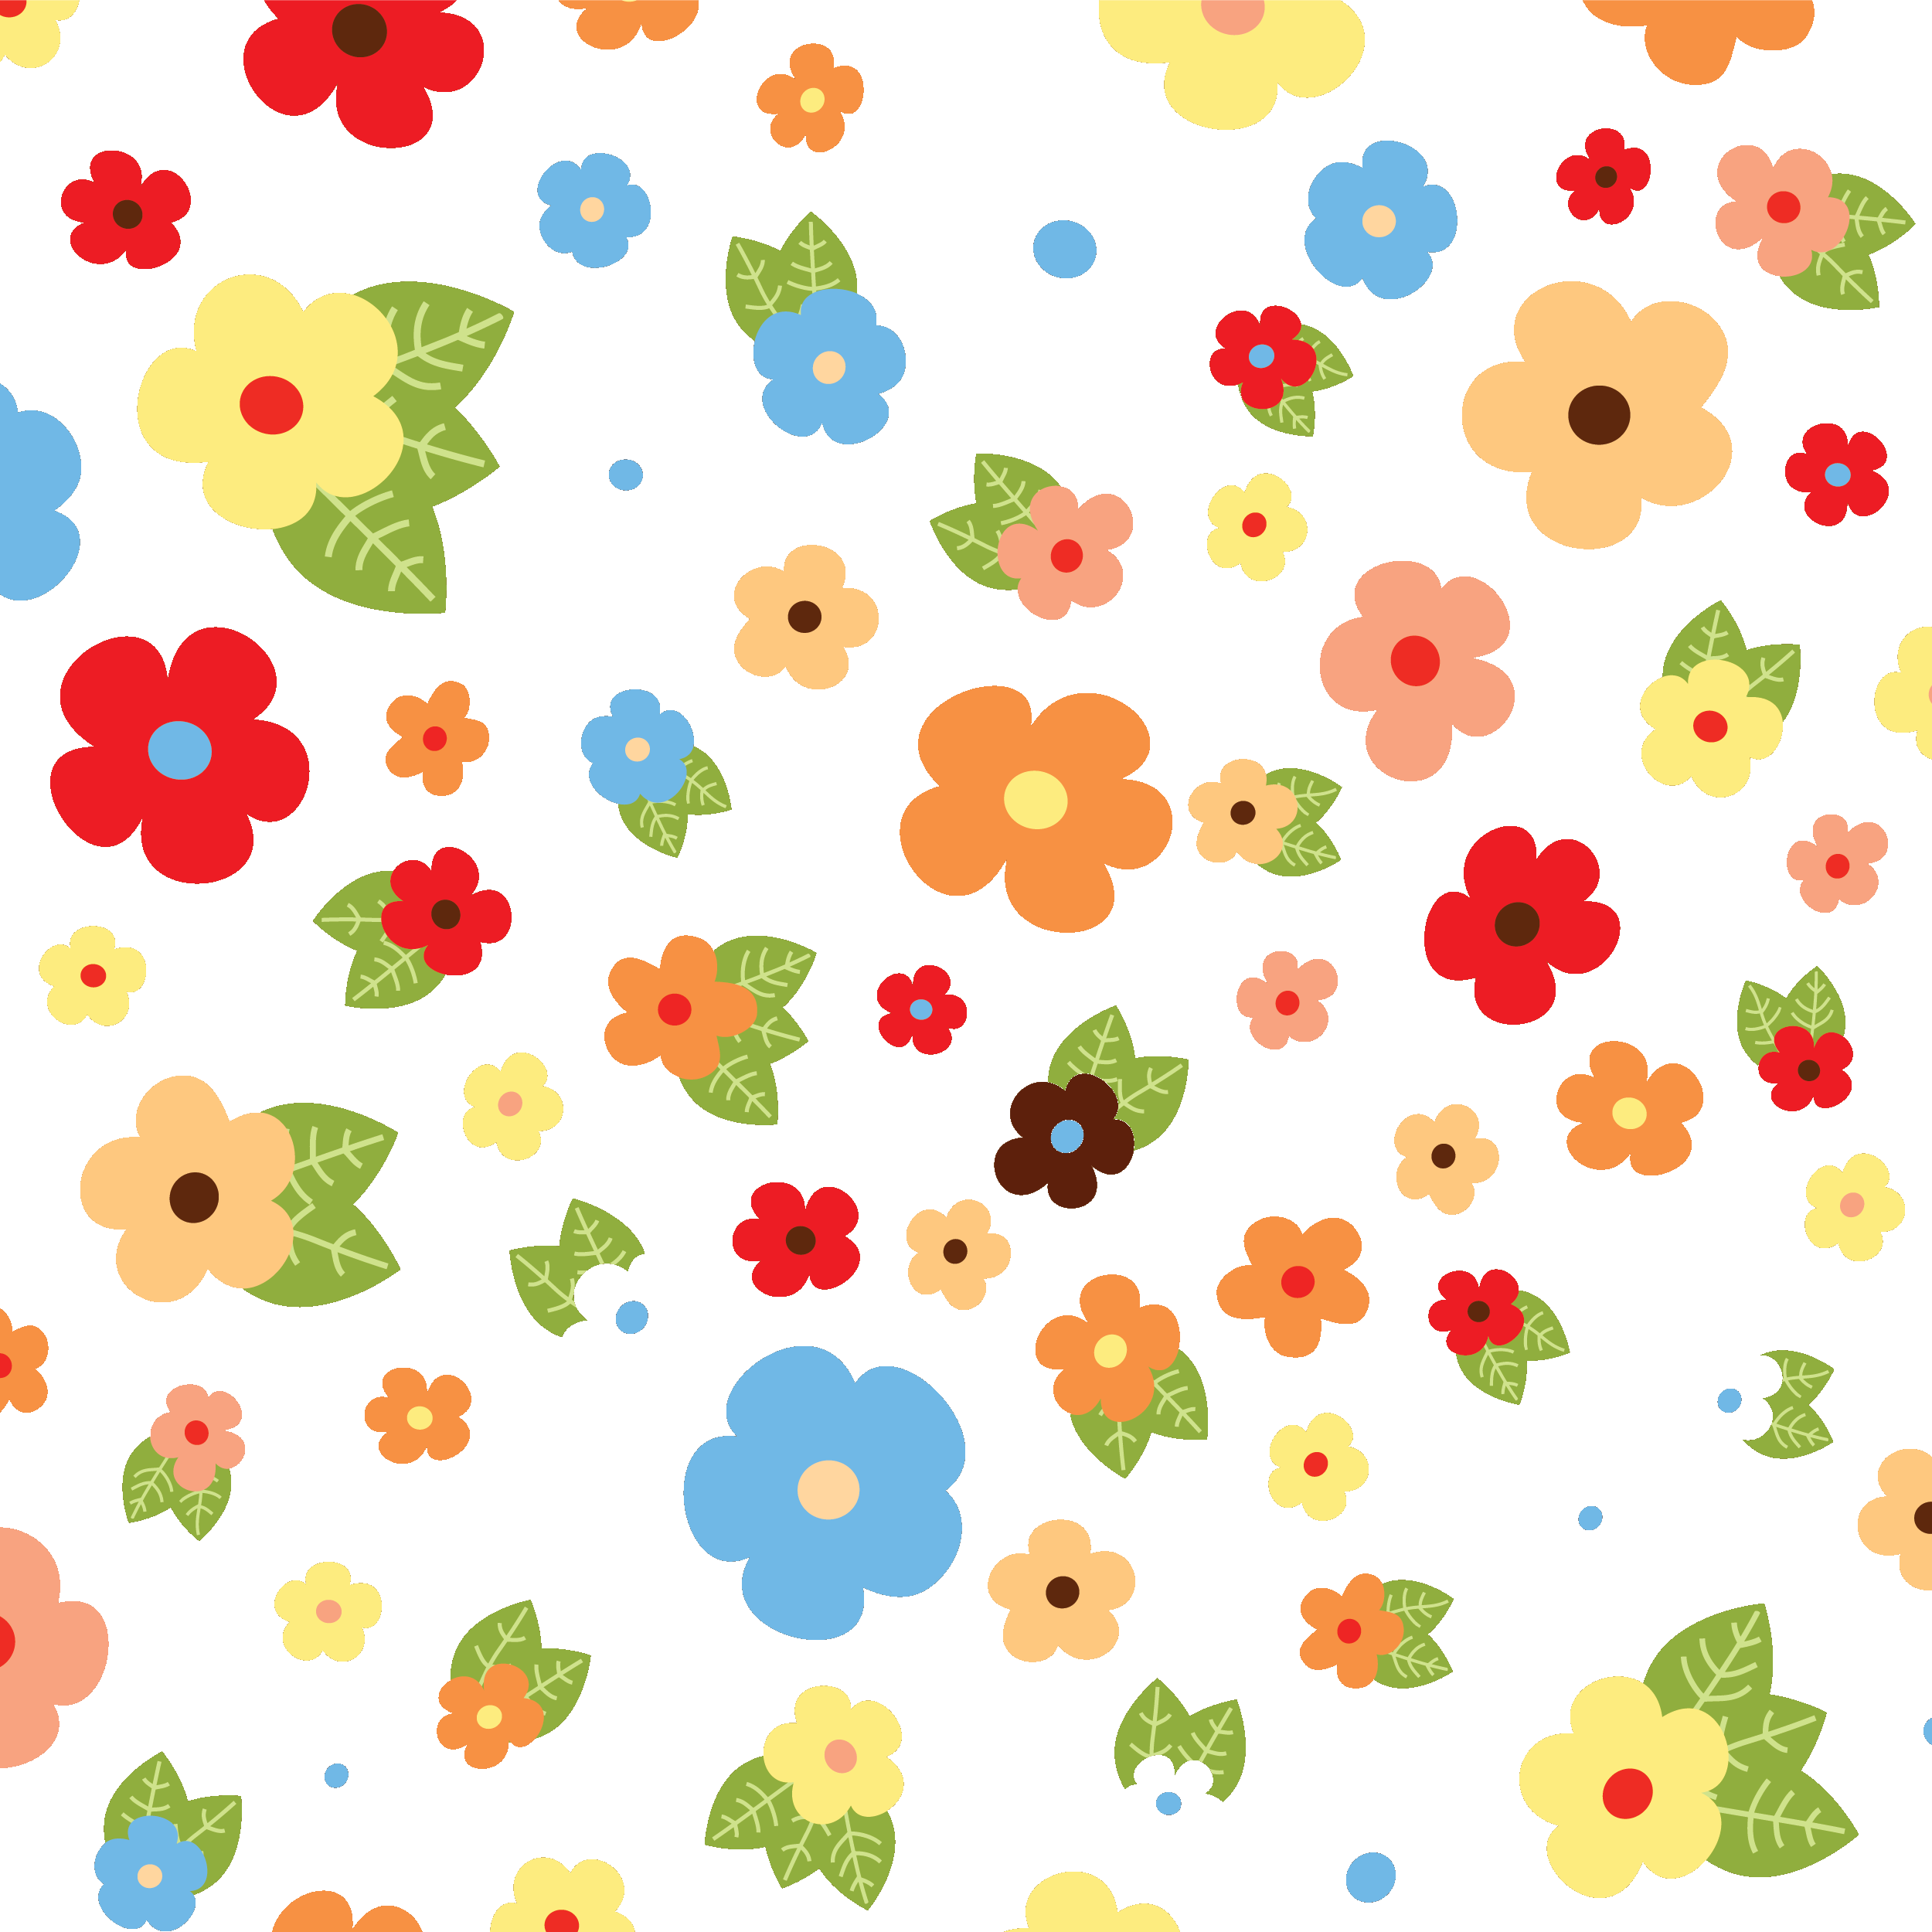 壁紙 背景イラスト 花の模様 柄 パターン No 075 カラフルな花びら 透明